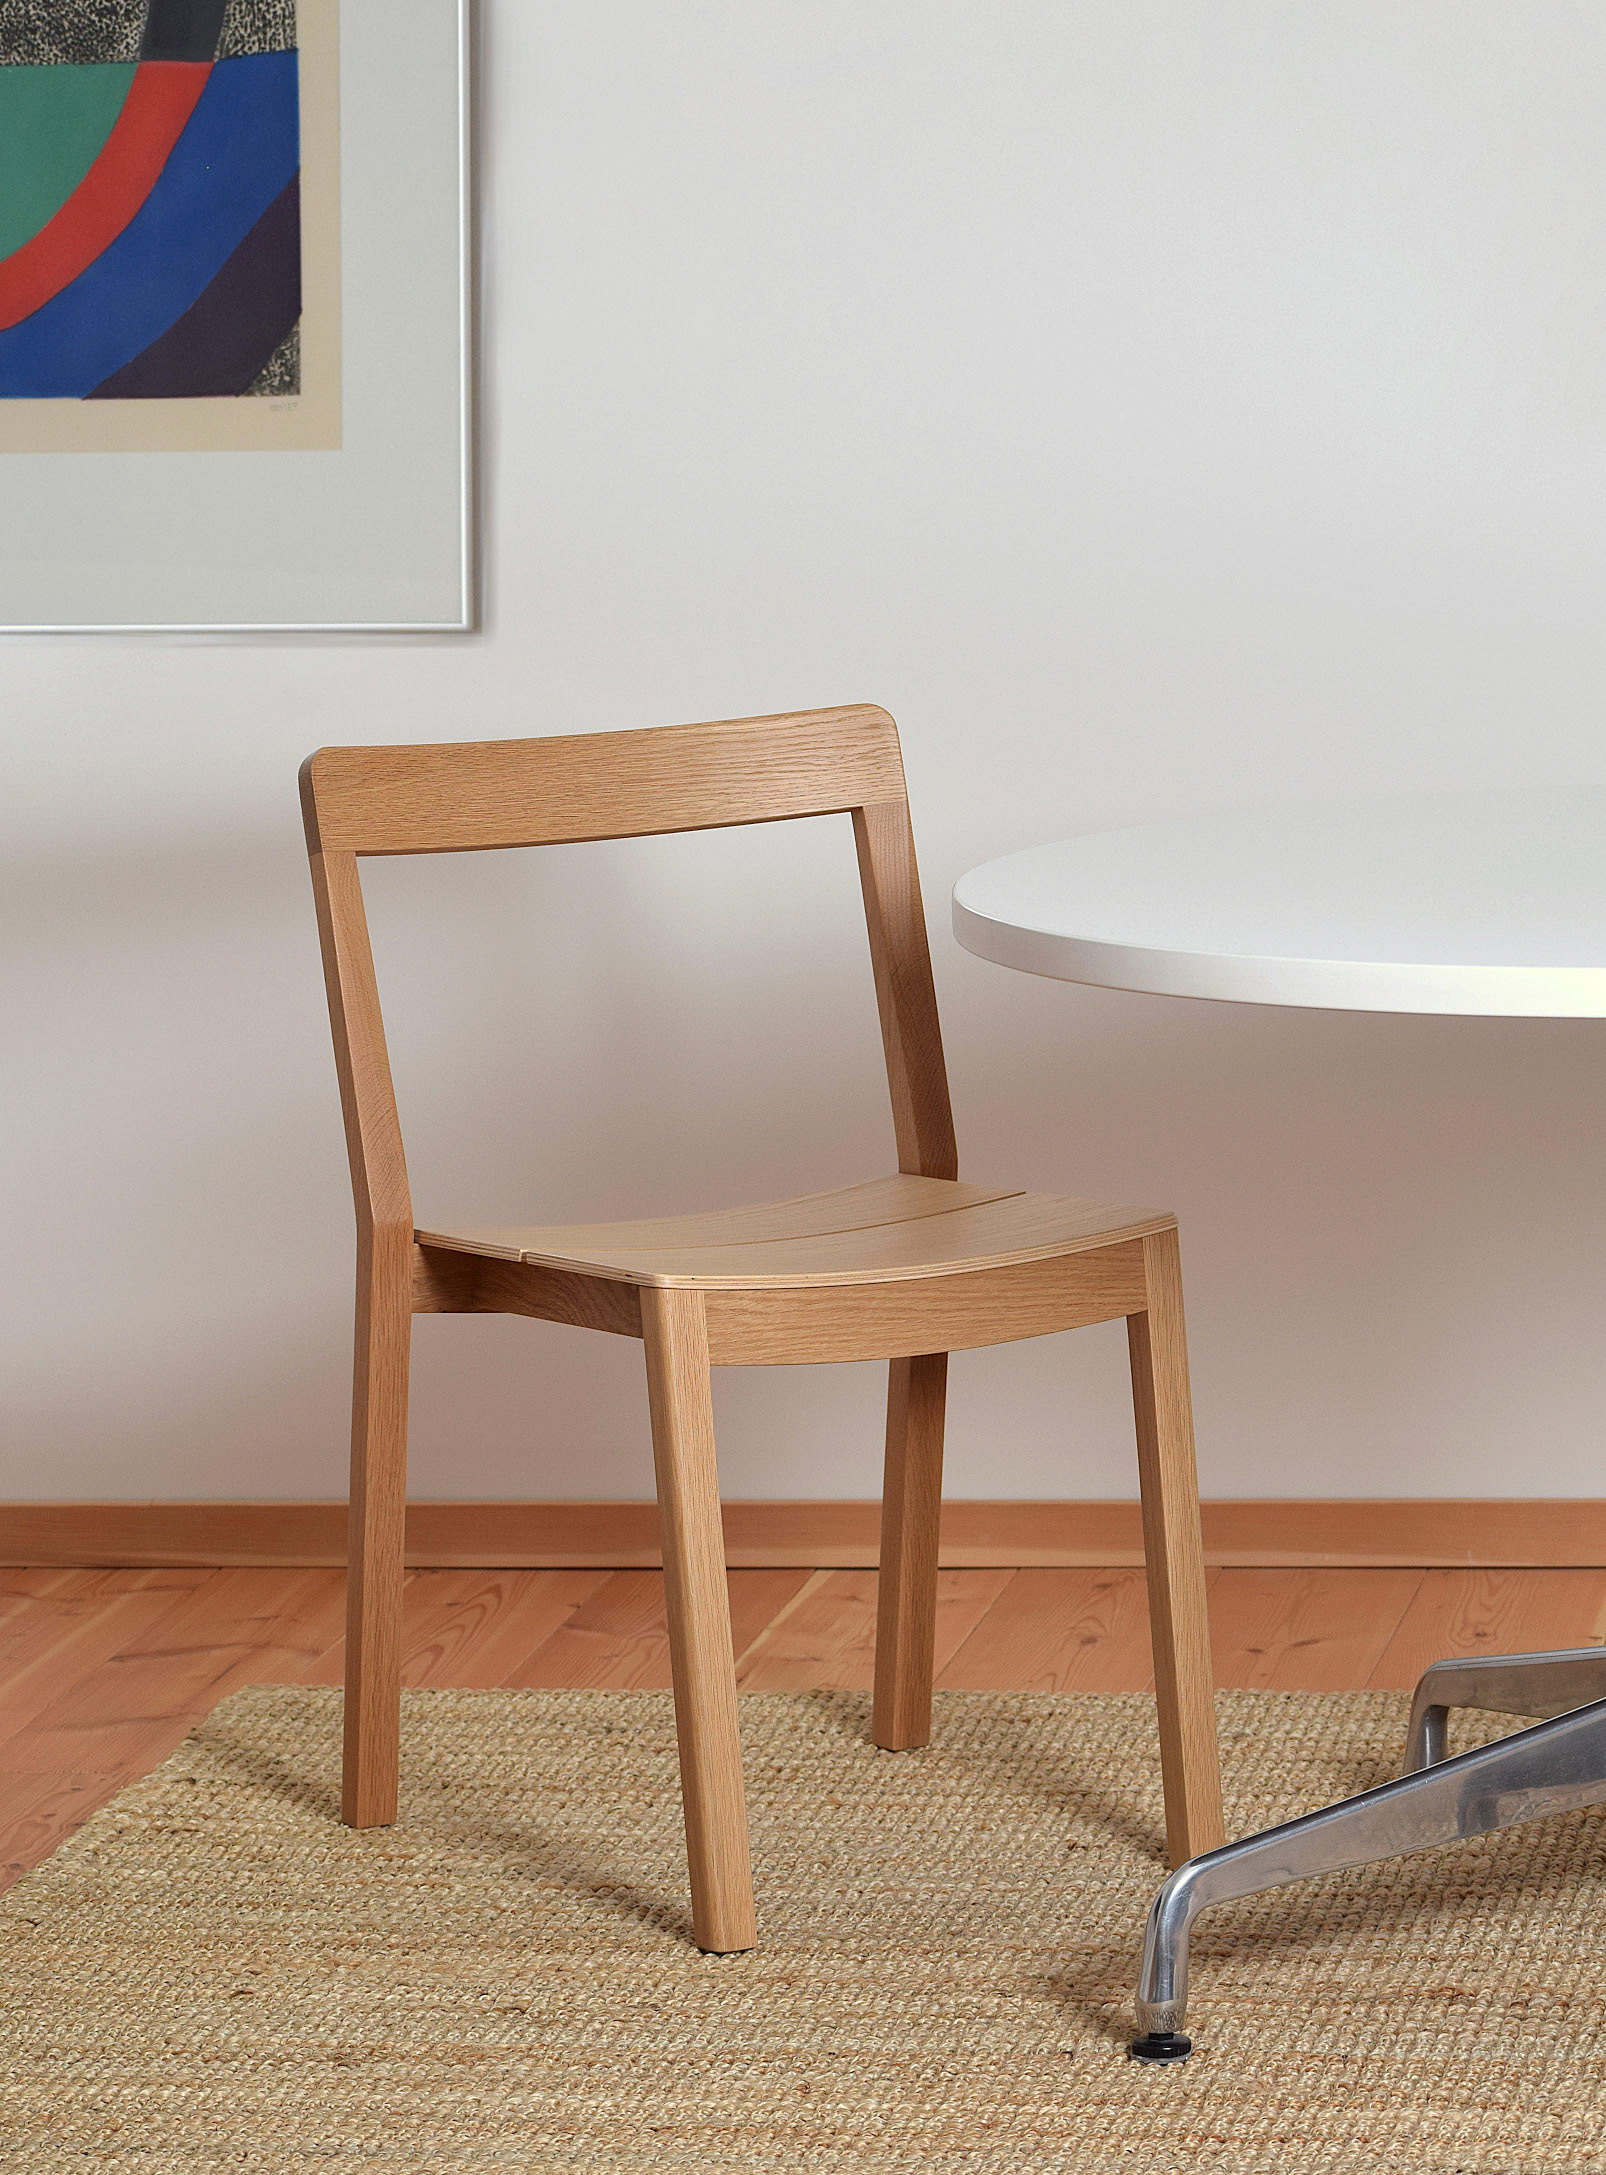 Essai Mobilier - La chaise en bois Same